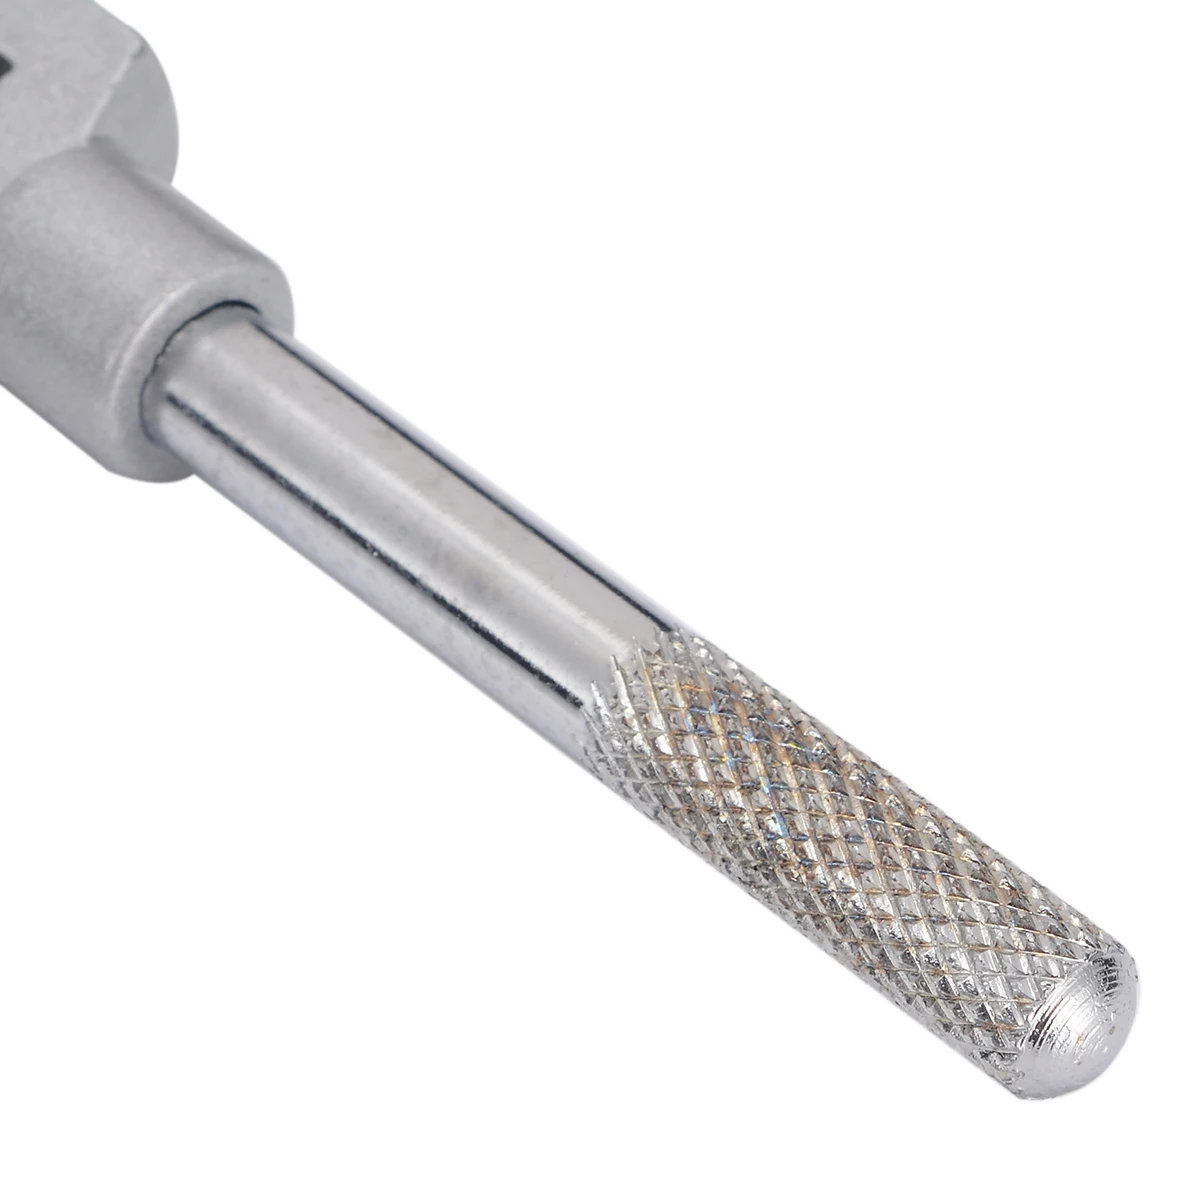 M3-M12 1/1" до 1/2" регулируемый гаечный ключ для резьбовой ручки стального ручного крана держатель для нарезания расширителя инструментов